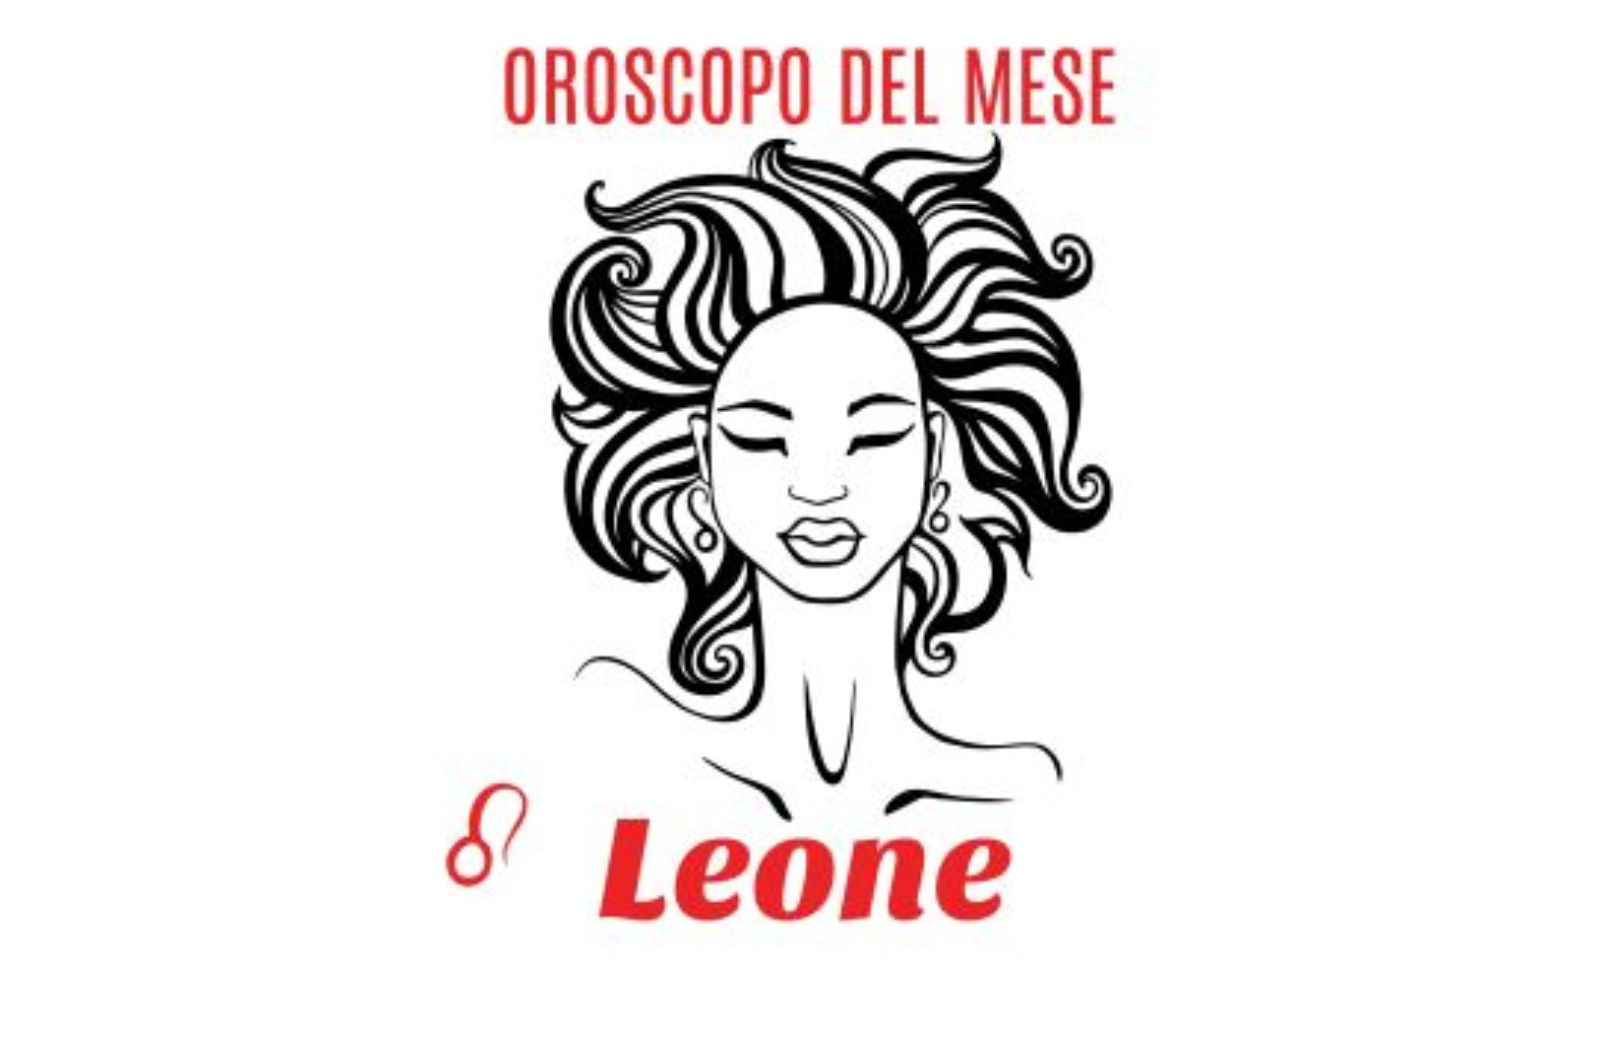 Oroscopo del mese: Leone - febbraio 2020